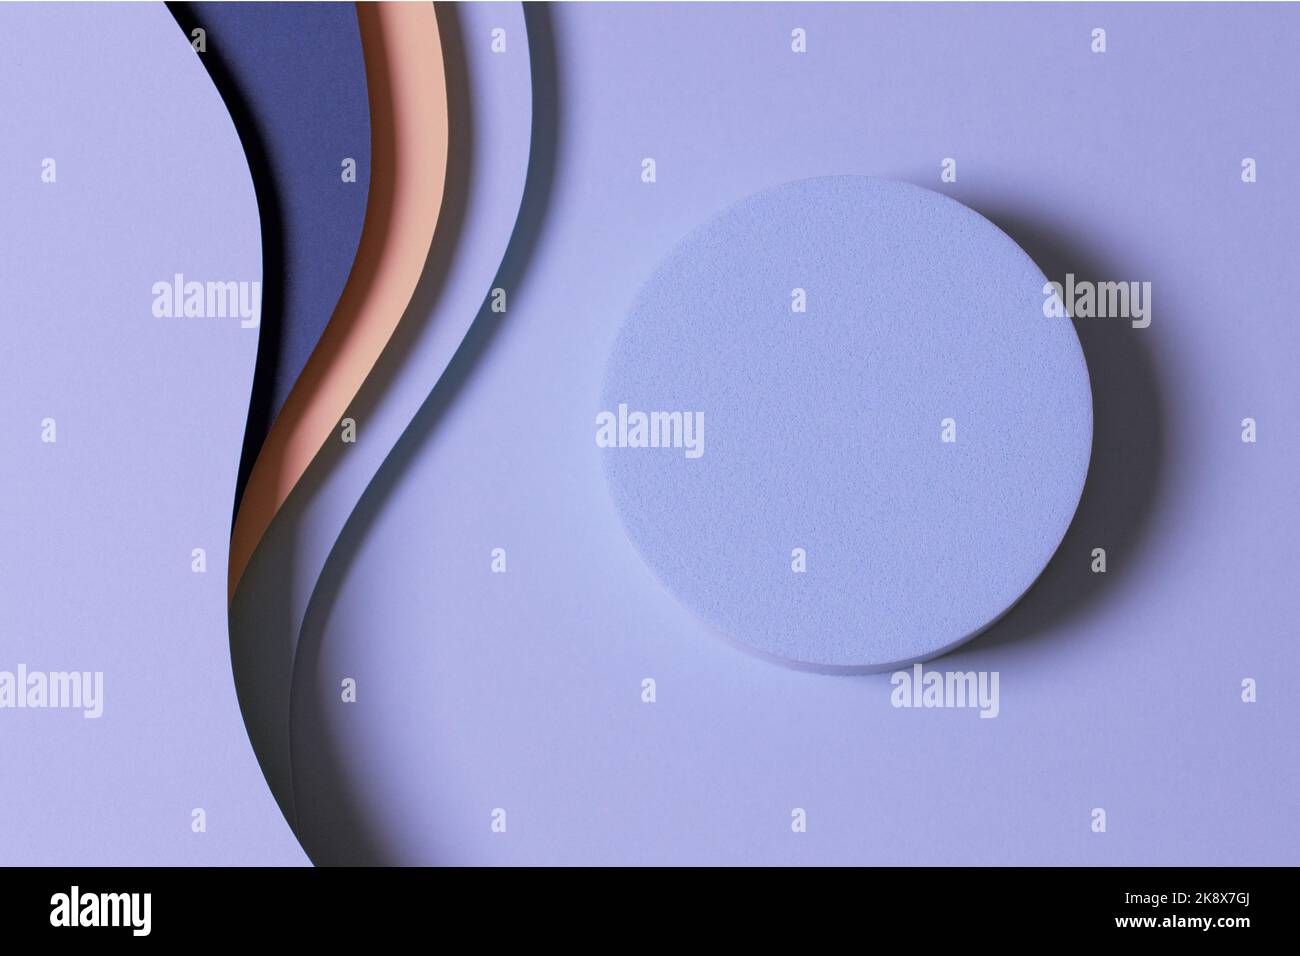 Blank runde geometrische Form hellblau Podium Plattform auf Papier geschnitten abstrakt minimal geometrische Form blau, pastellrosa, lila Farben Farbe Hintergrund Stockfoto